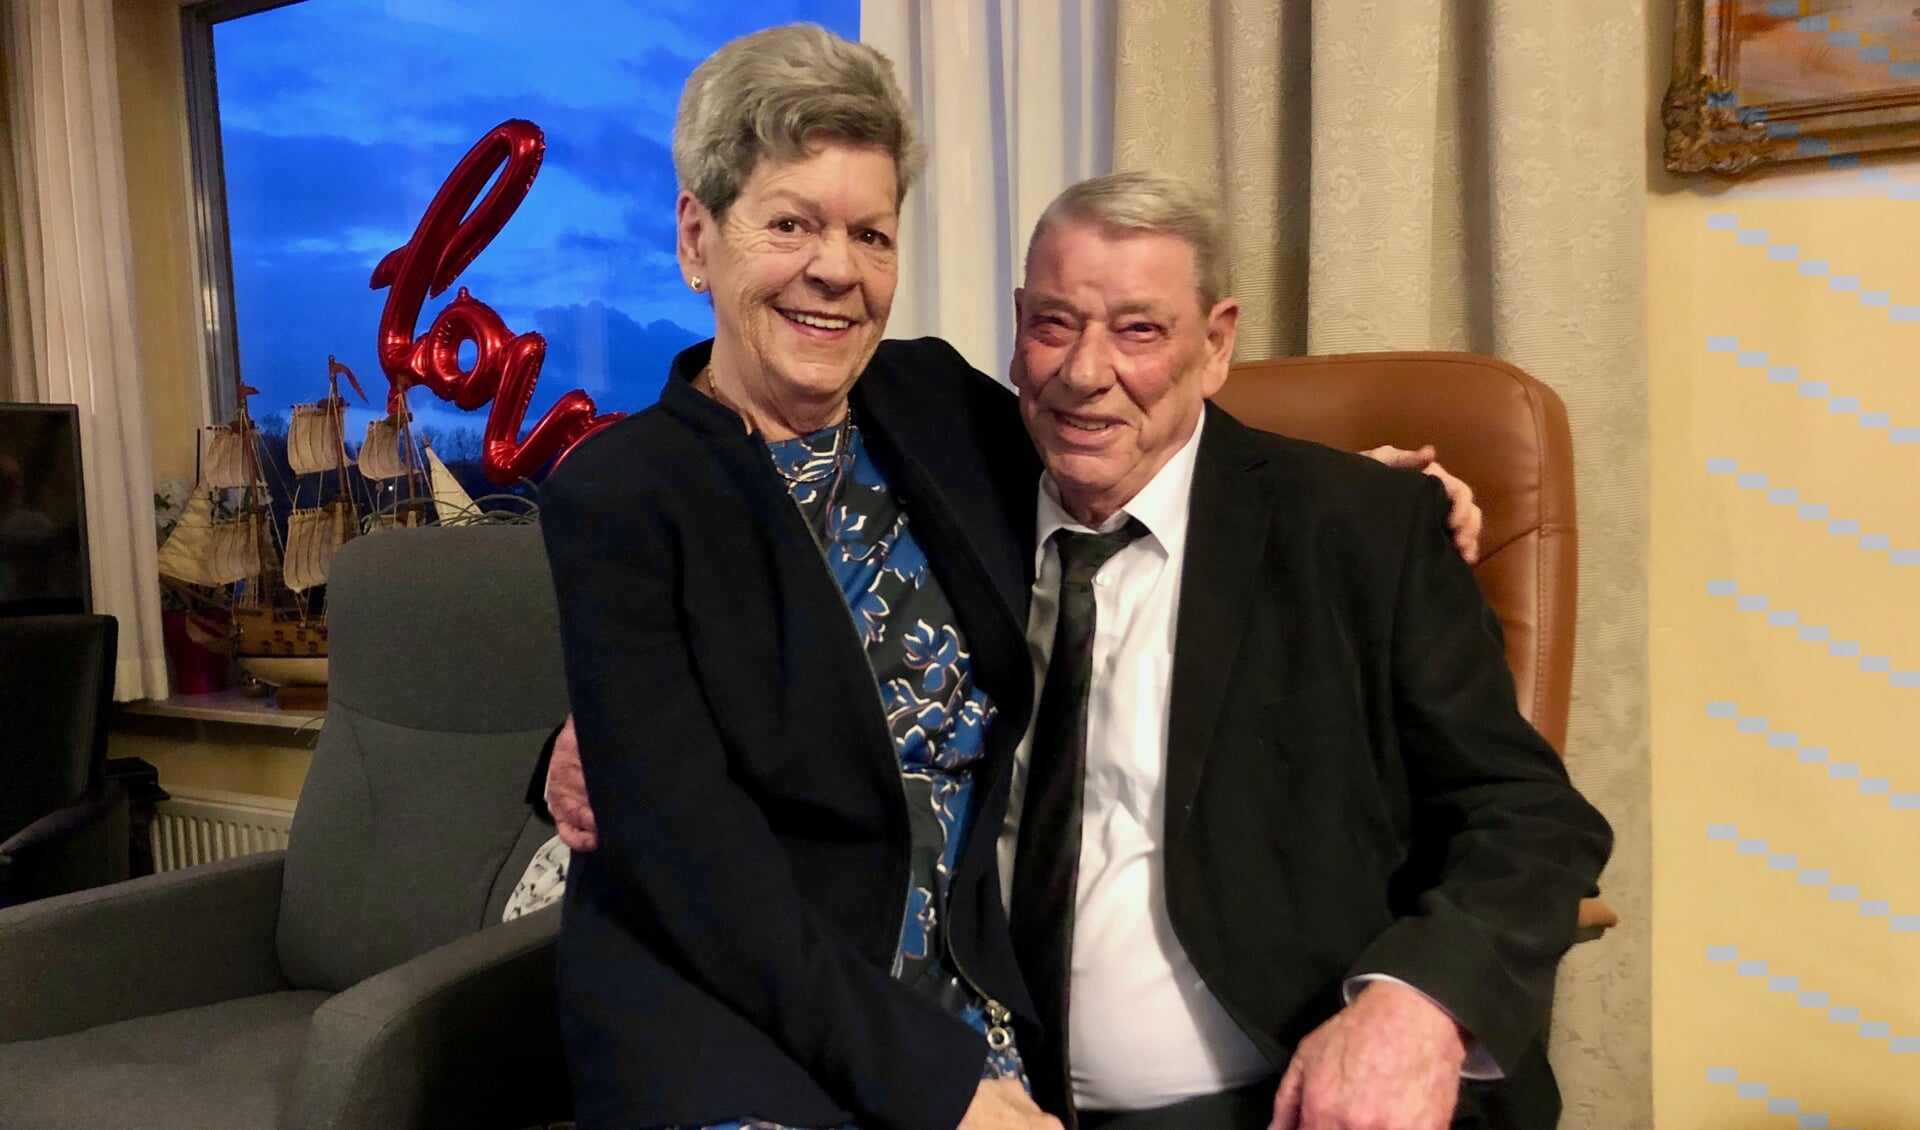 Els en Henk zijn na 60 jaar huwelijk nog steeds erg gelukkig met elkaar. 